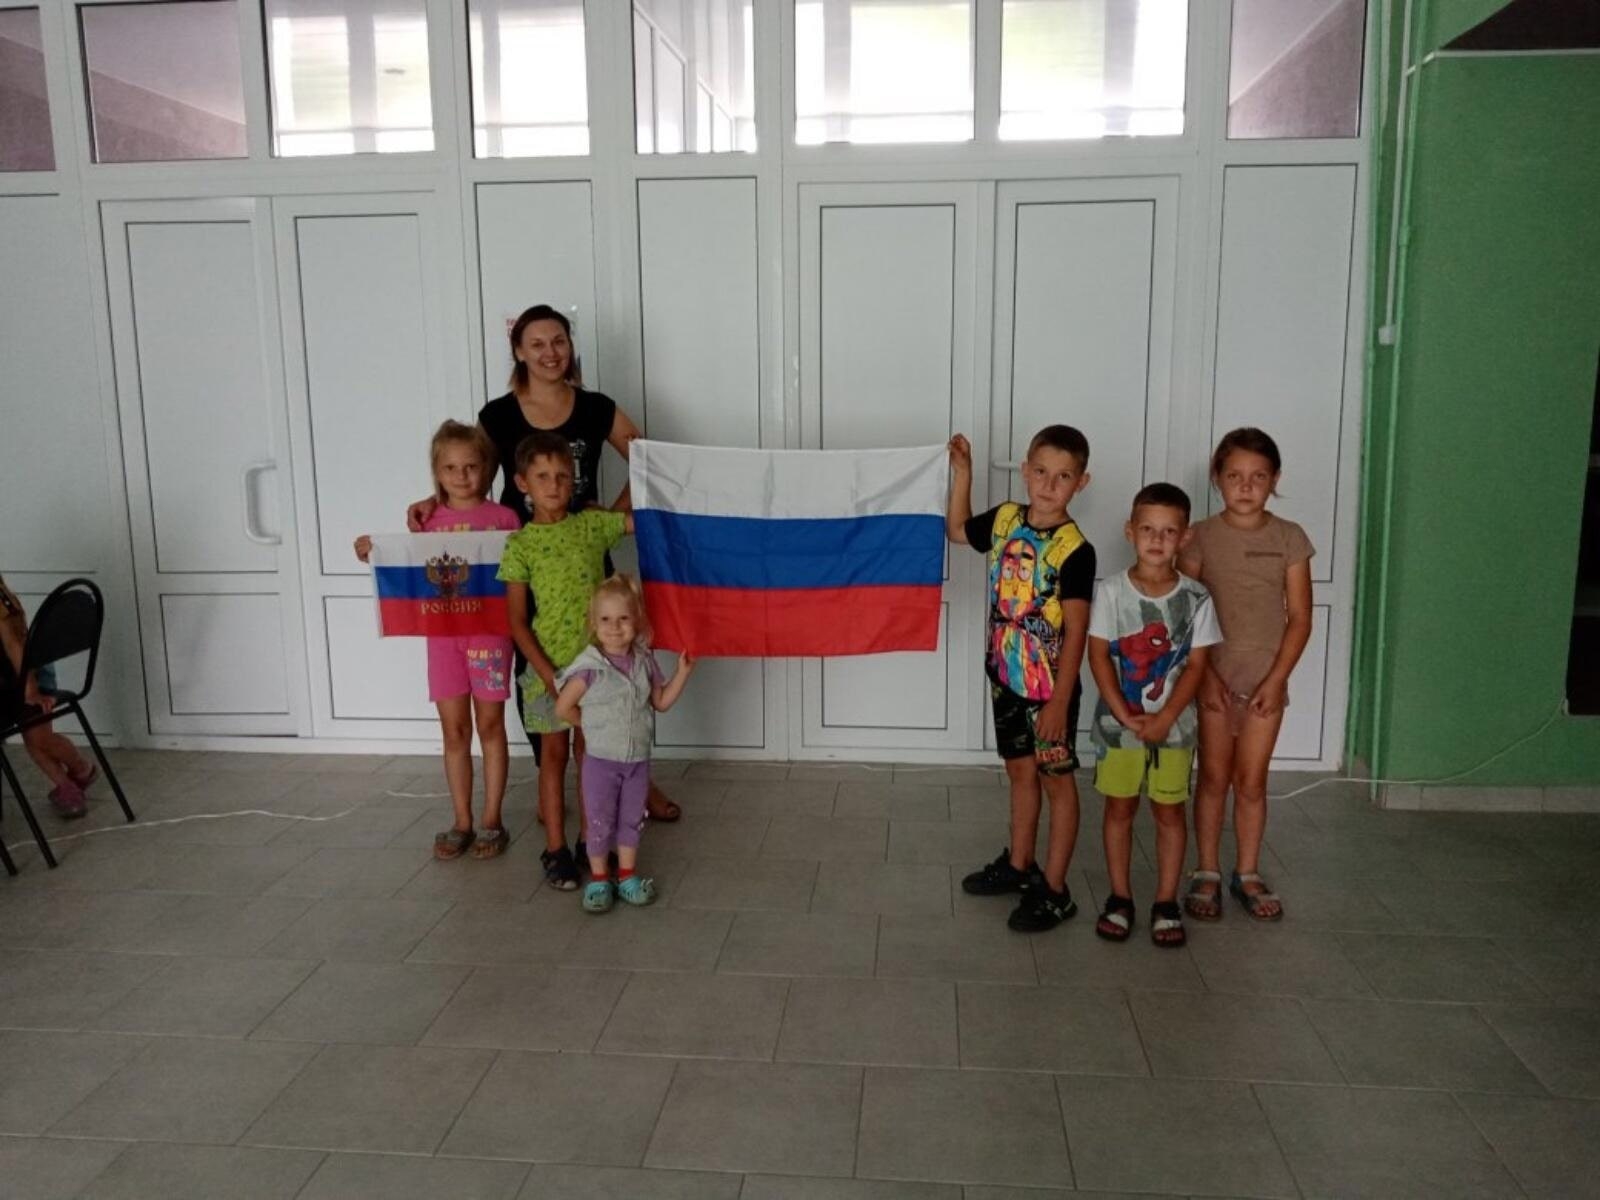 Тематические мероприятия, посвященные Дню Государственного флага Российской Федерации